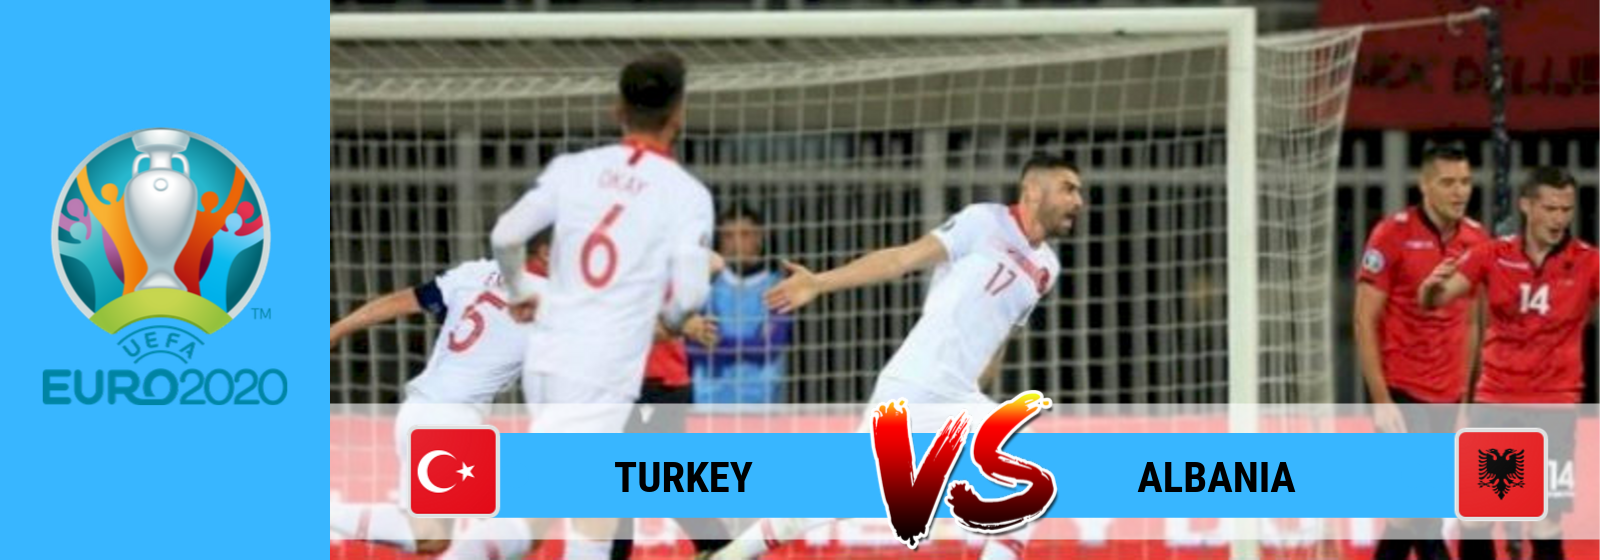 UEFA Euro 2020 Turkey Vs. Albania Asian Connect